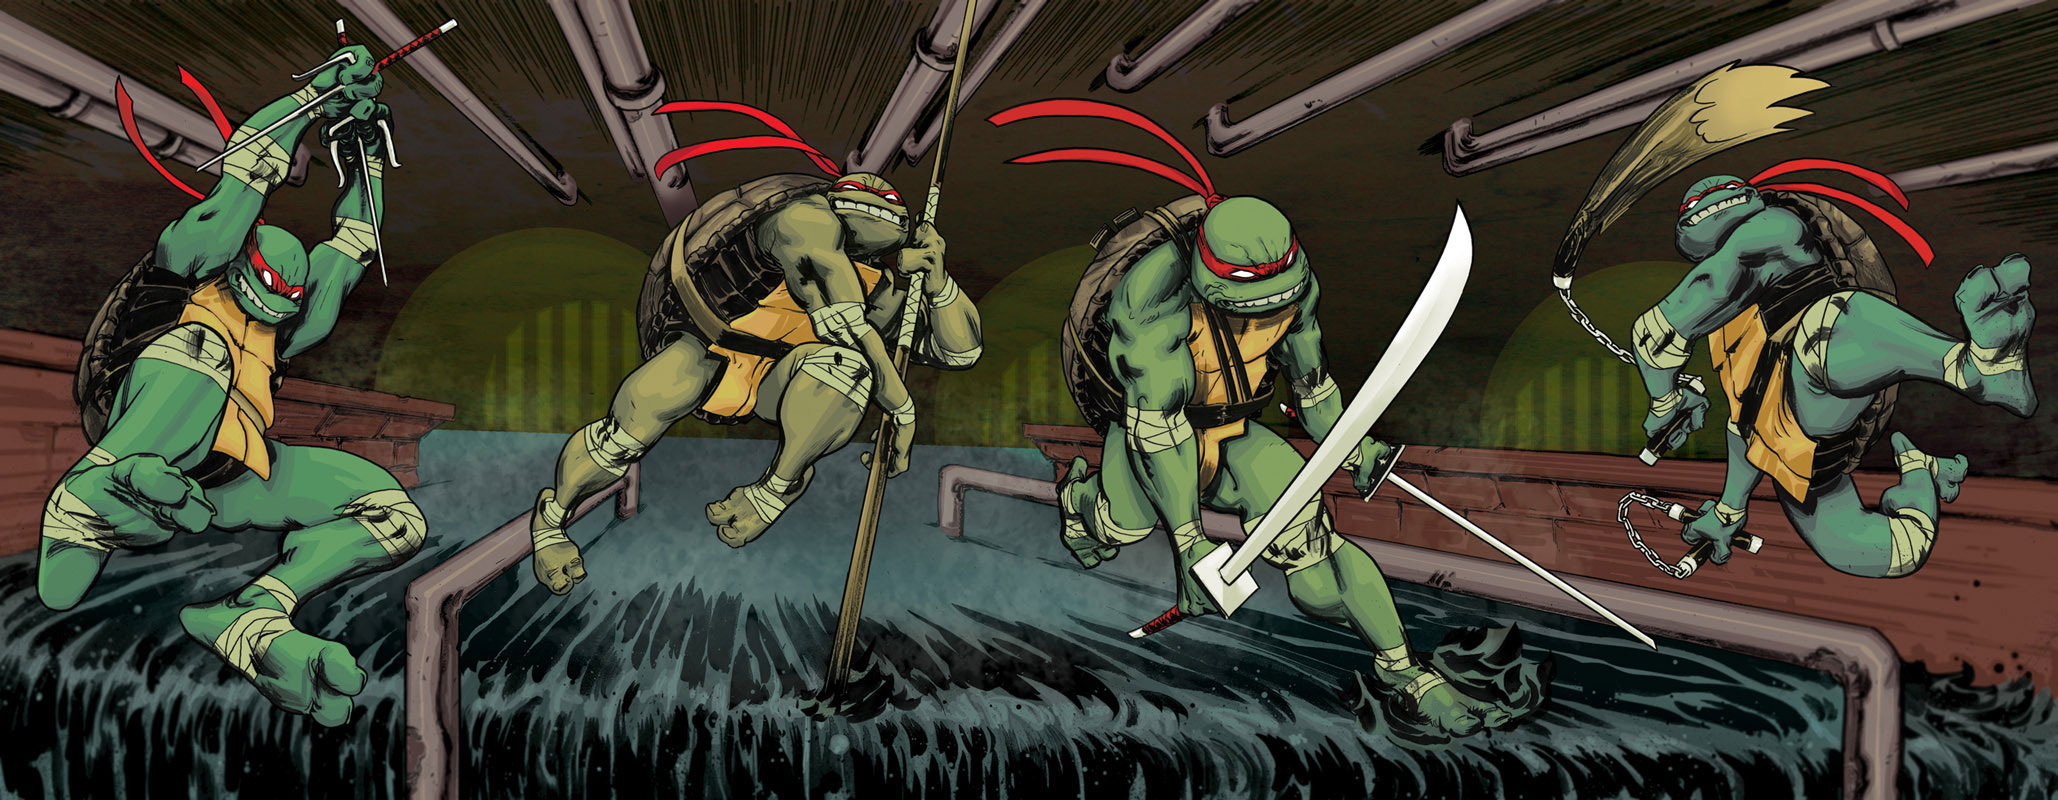 Batman/Teenage Mutant Ninja Turtles II, TMNTPedia